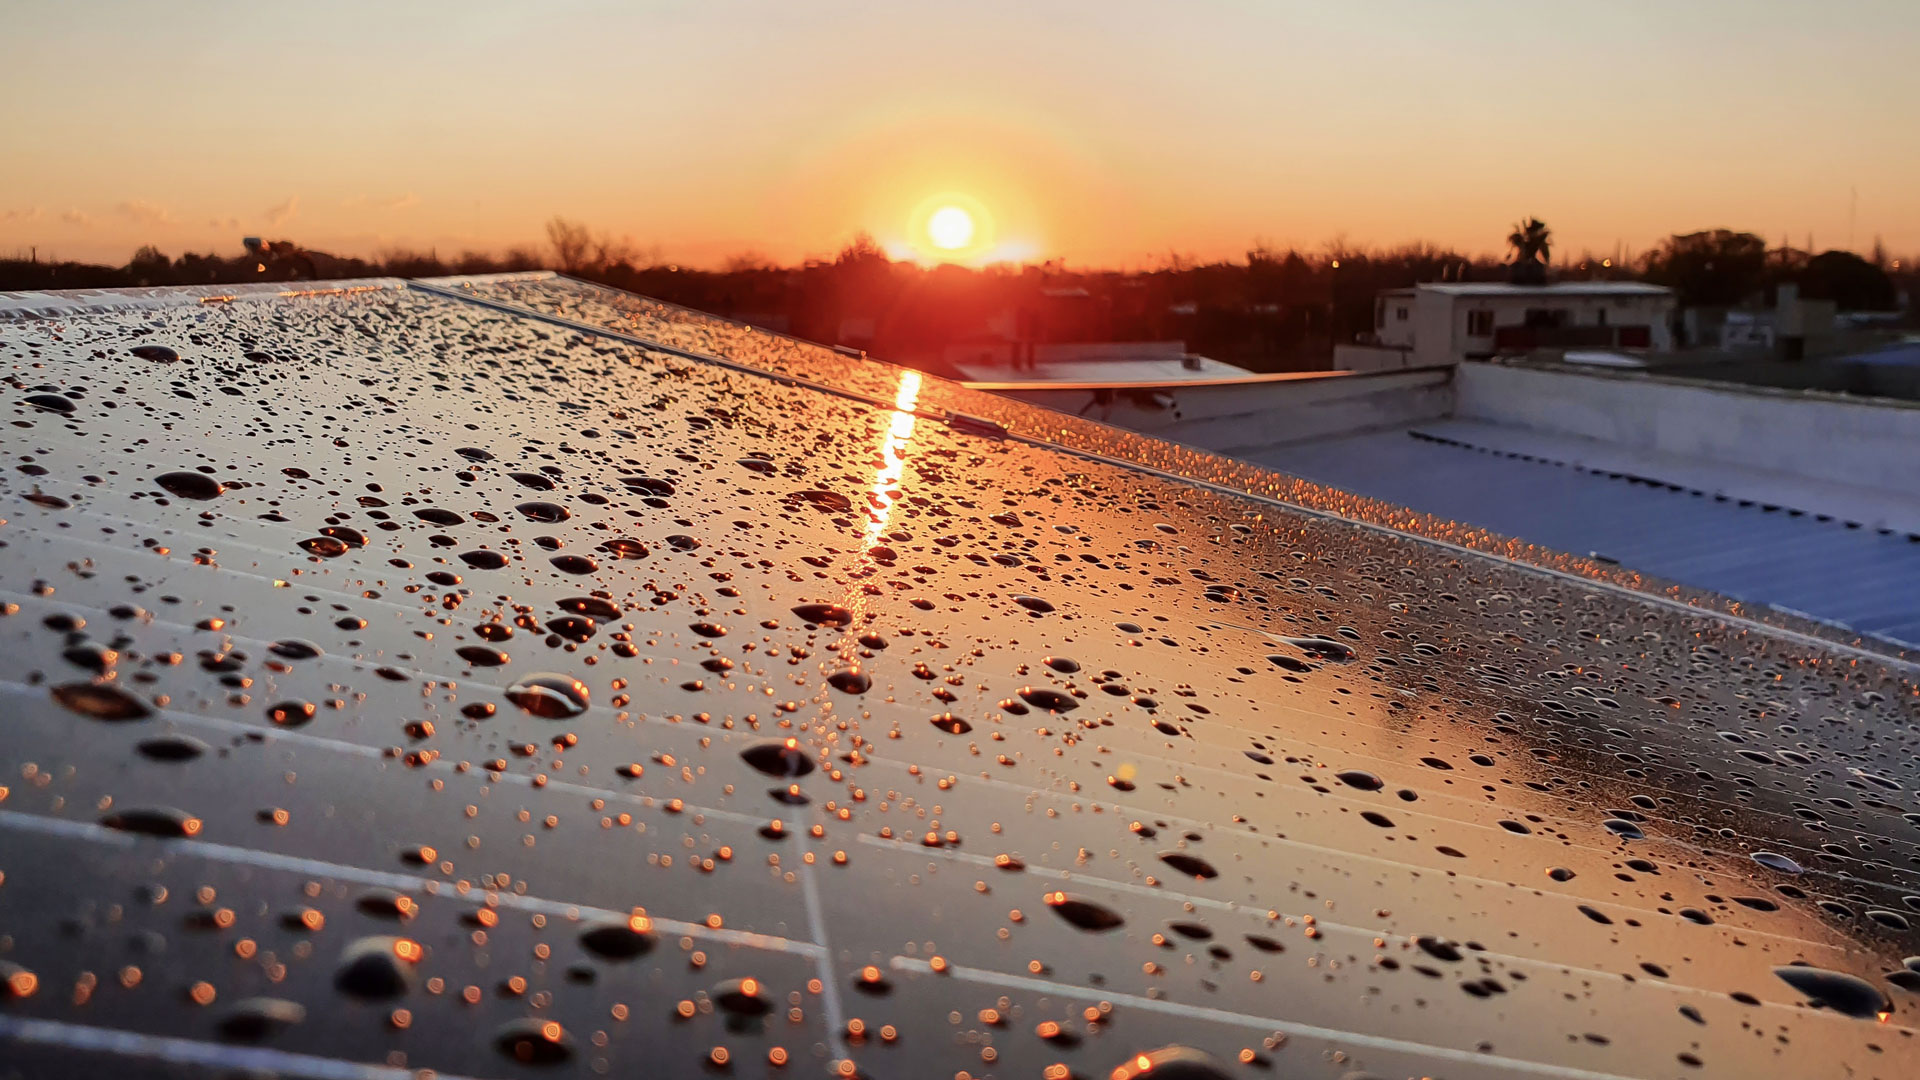 Serão os painéis solares fotovoltaicos eficazes durante o inverno?